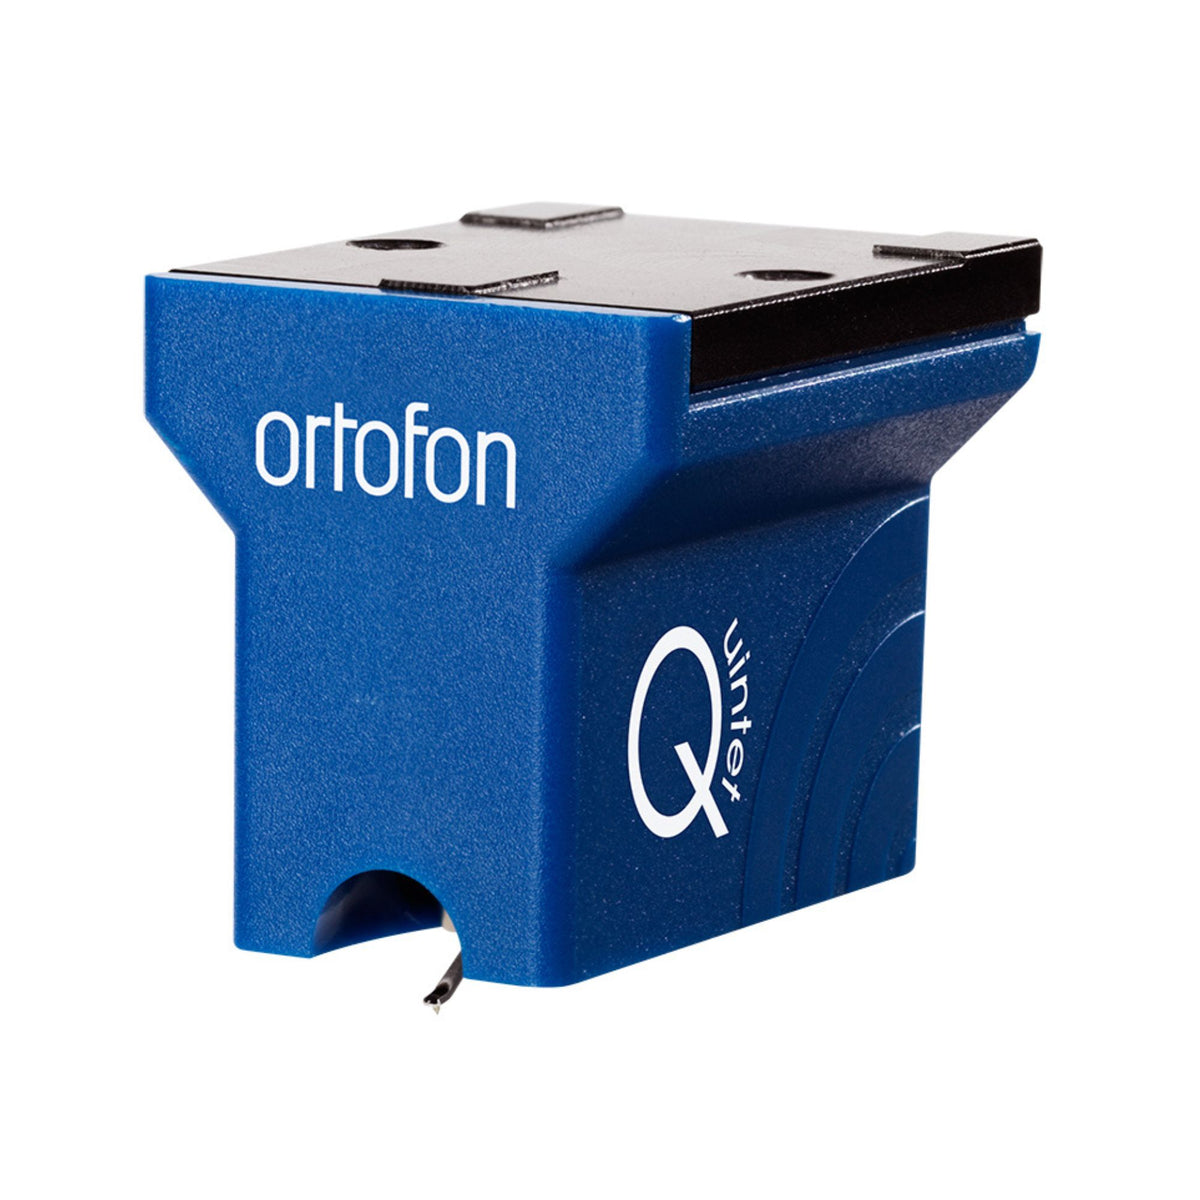 Ortofon MC Quintet Blue, Ortofon, Turntable Accessories - AVStore.in